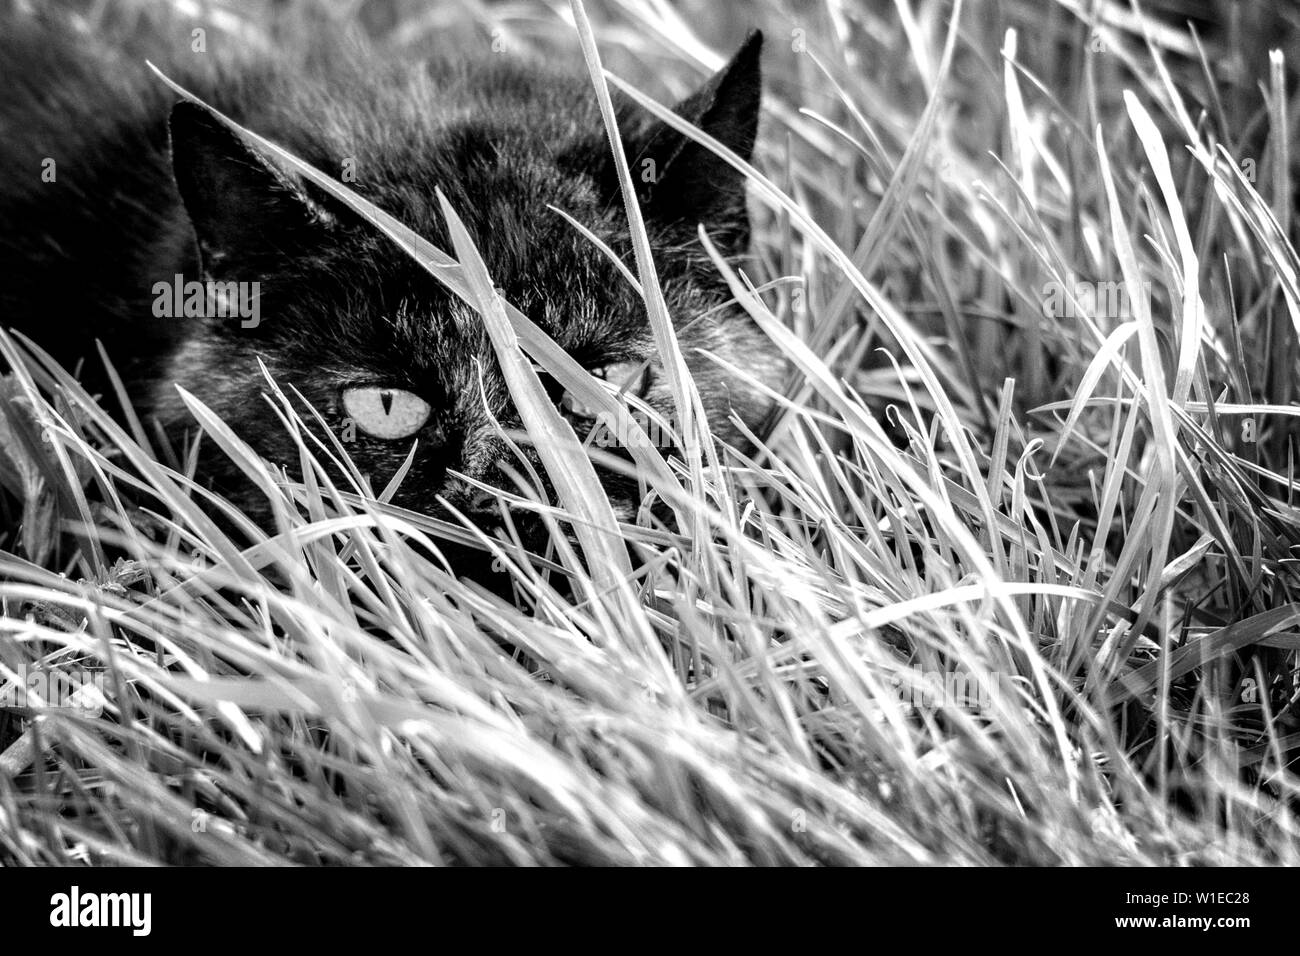 Un ritratto di un gatto nascondendo formare esseri umani in erba alta in un prato. È accovacciata e ha assunto un atteggiamento stealhty così il pensiero non poteva essere visto. Foto Stock